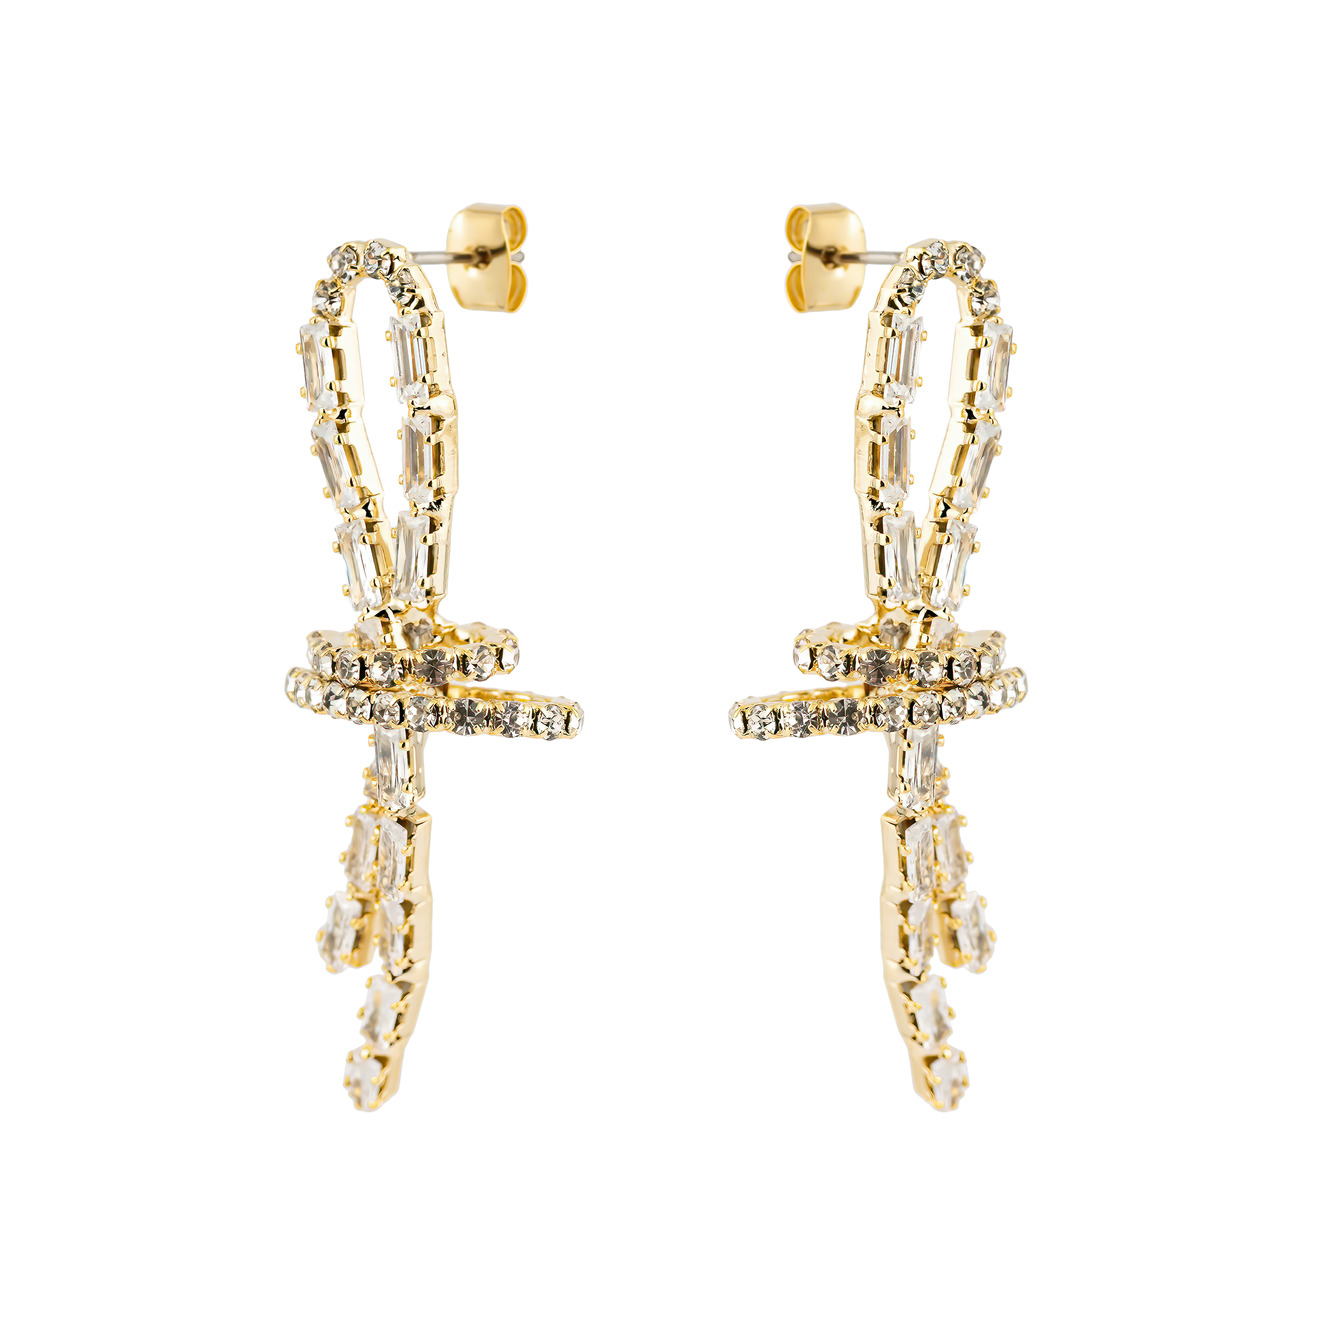 Herald Percy Золотистые серьги-петли с кристаллами herald percy золотистые серьги кресты с кристалами